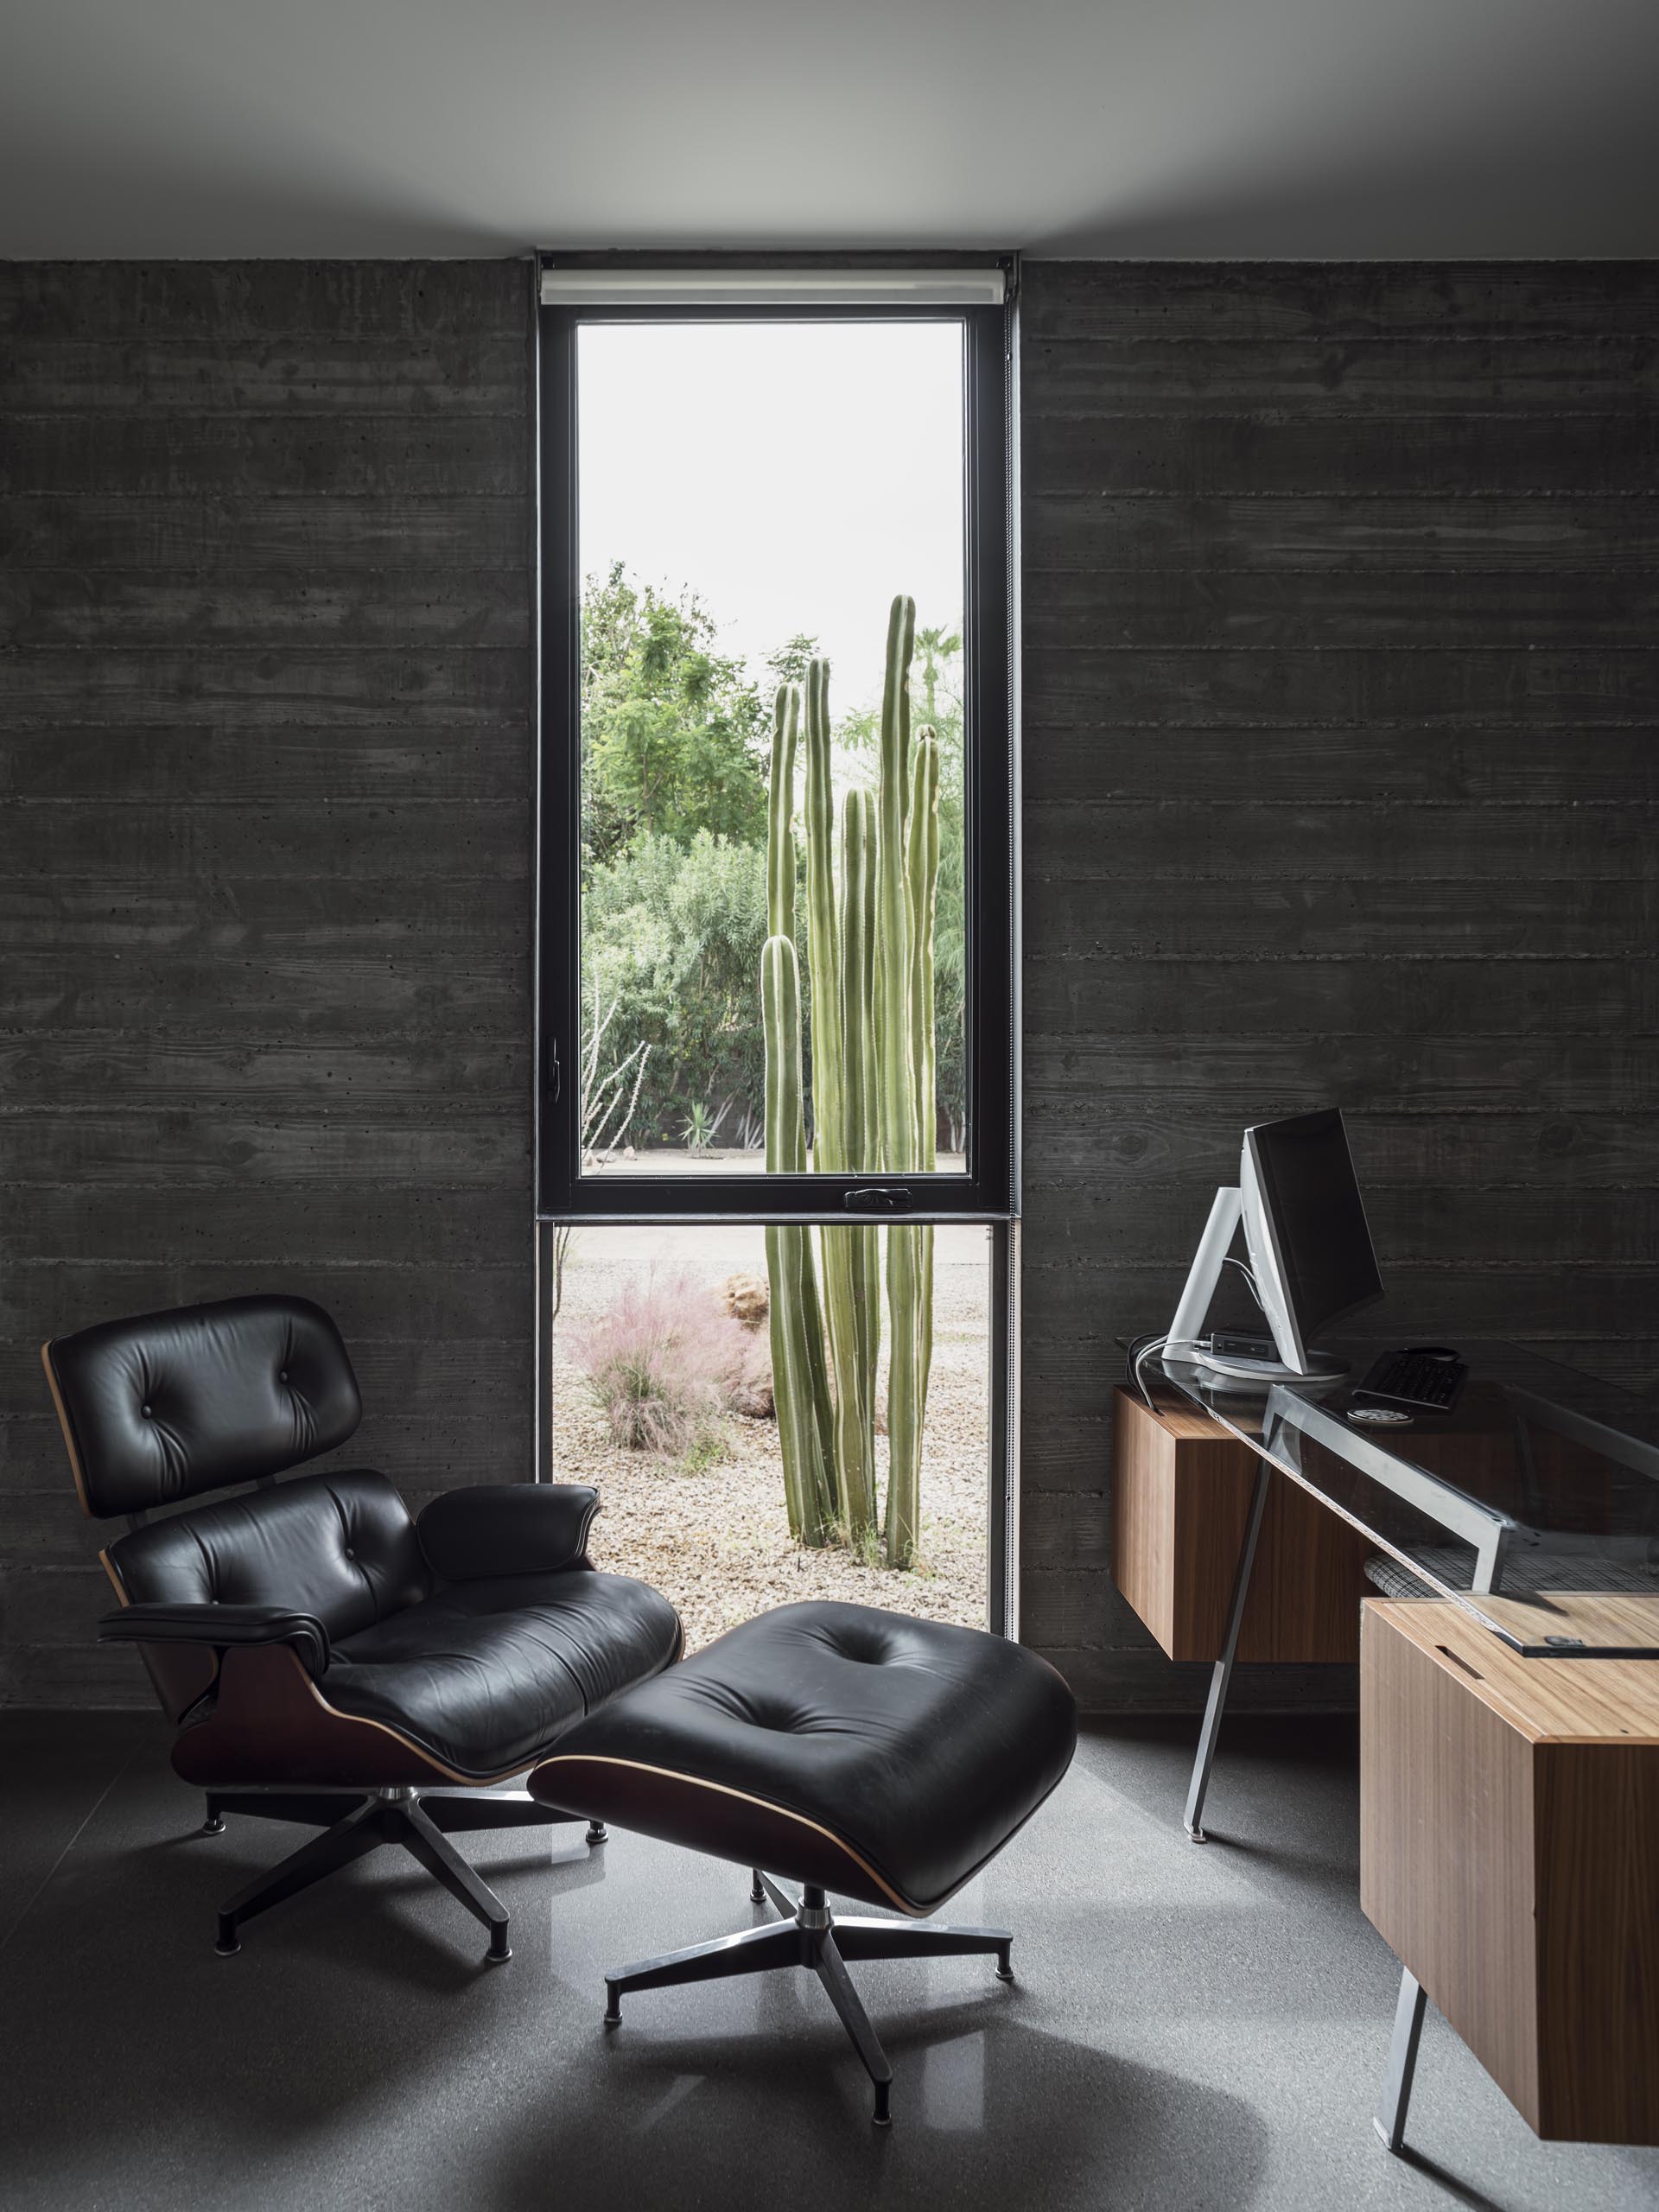 В этом домашнем офисе бетонные стены из досок хорошо видны, а окно от пола до потолка прекрасно обрамляет пустынные растения снаружи.